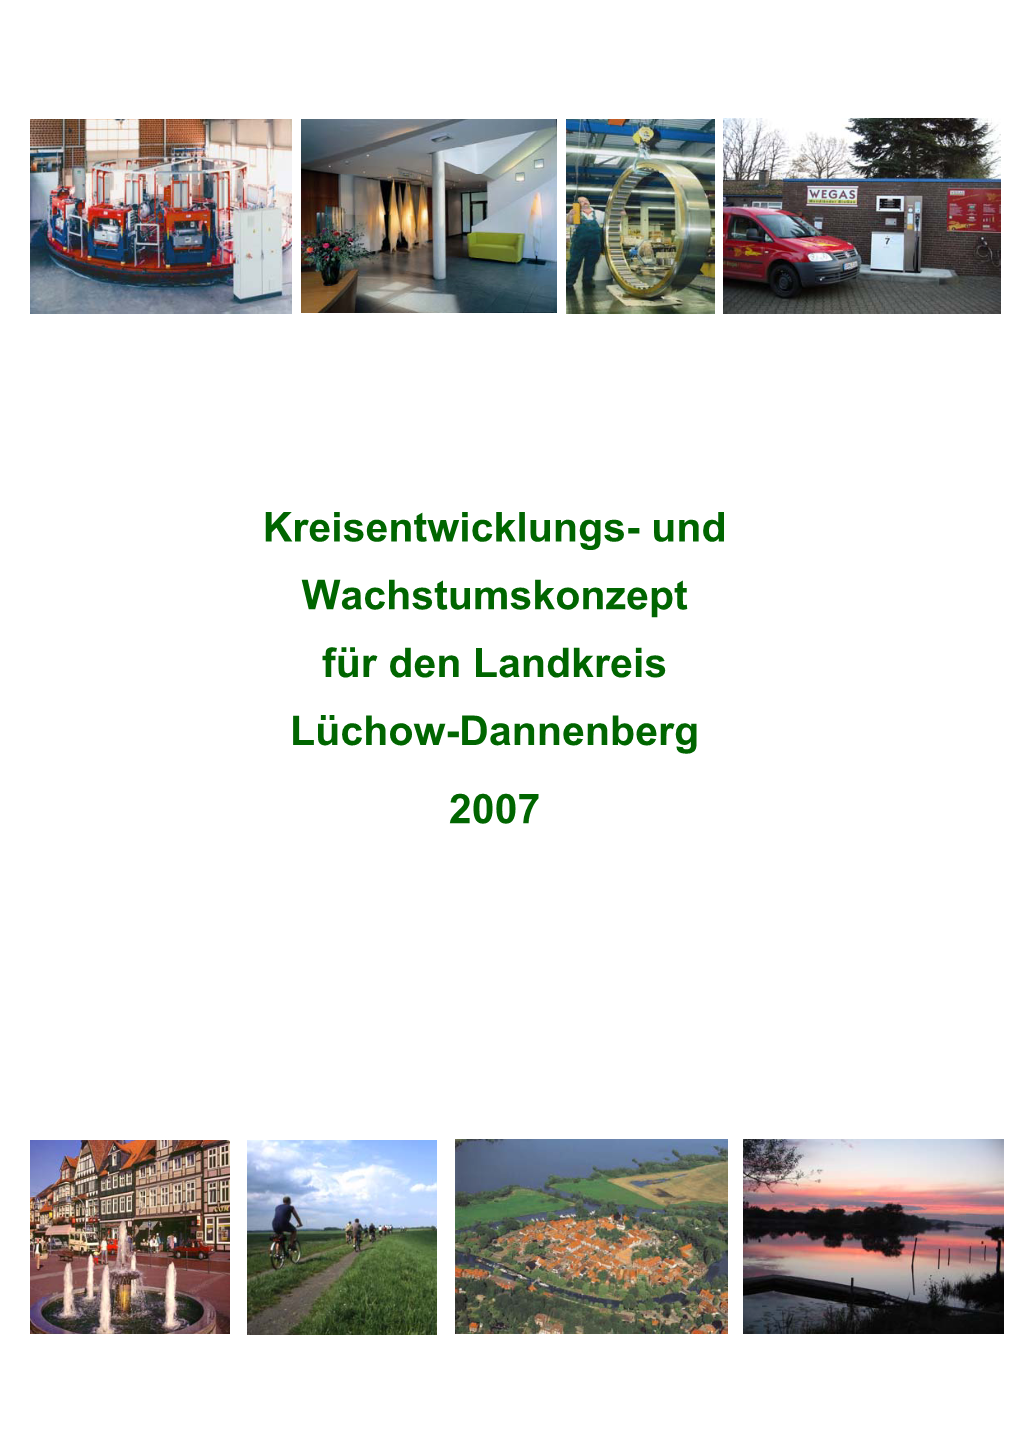 Kreisentwicklungs- Und Wachstumskonzept Für Den Landkreis Lüchow-Dannenberg 2007